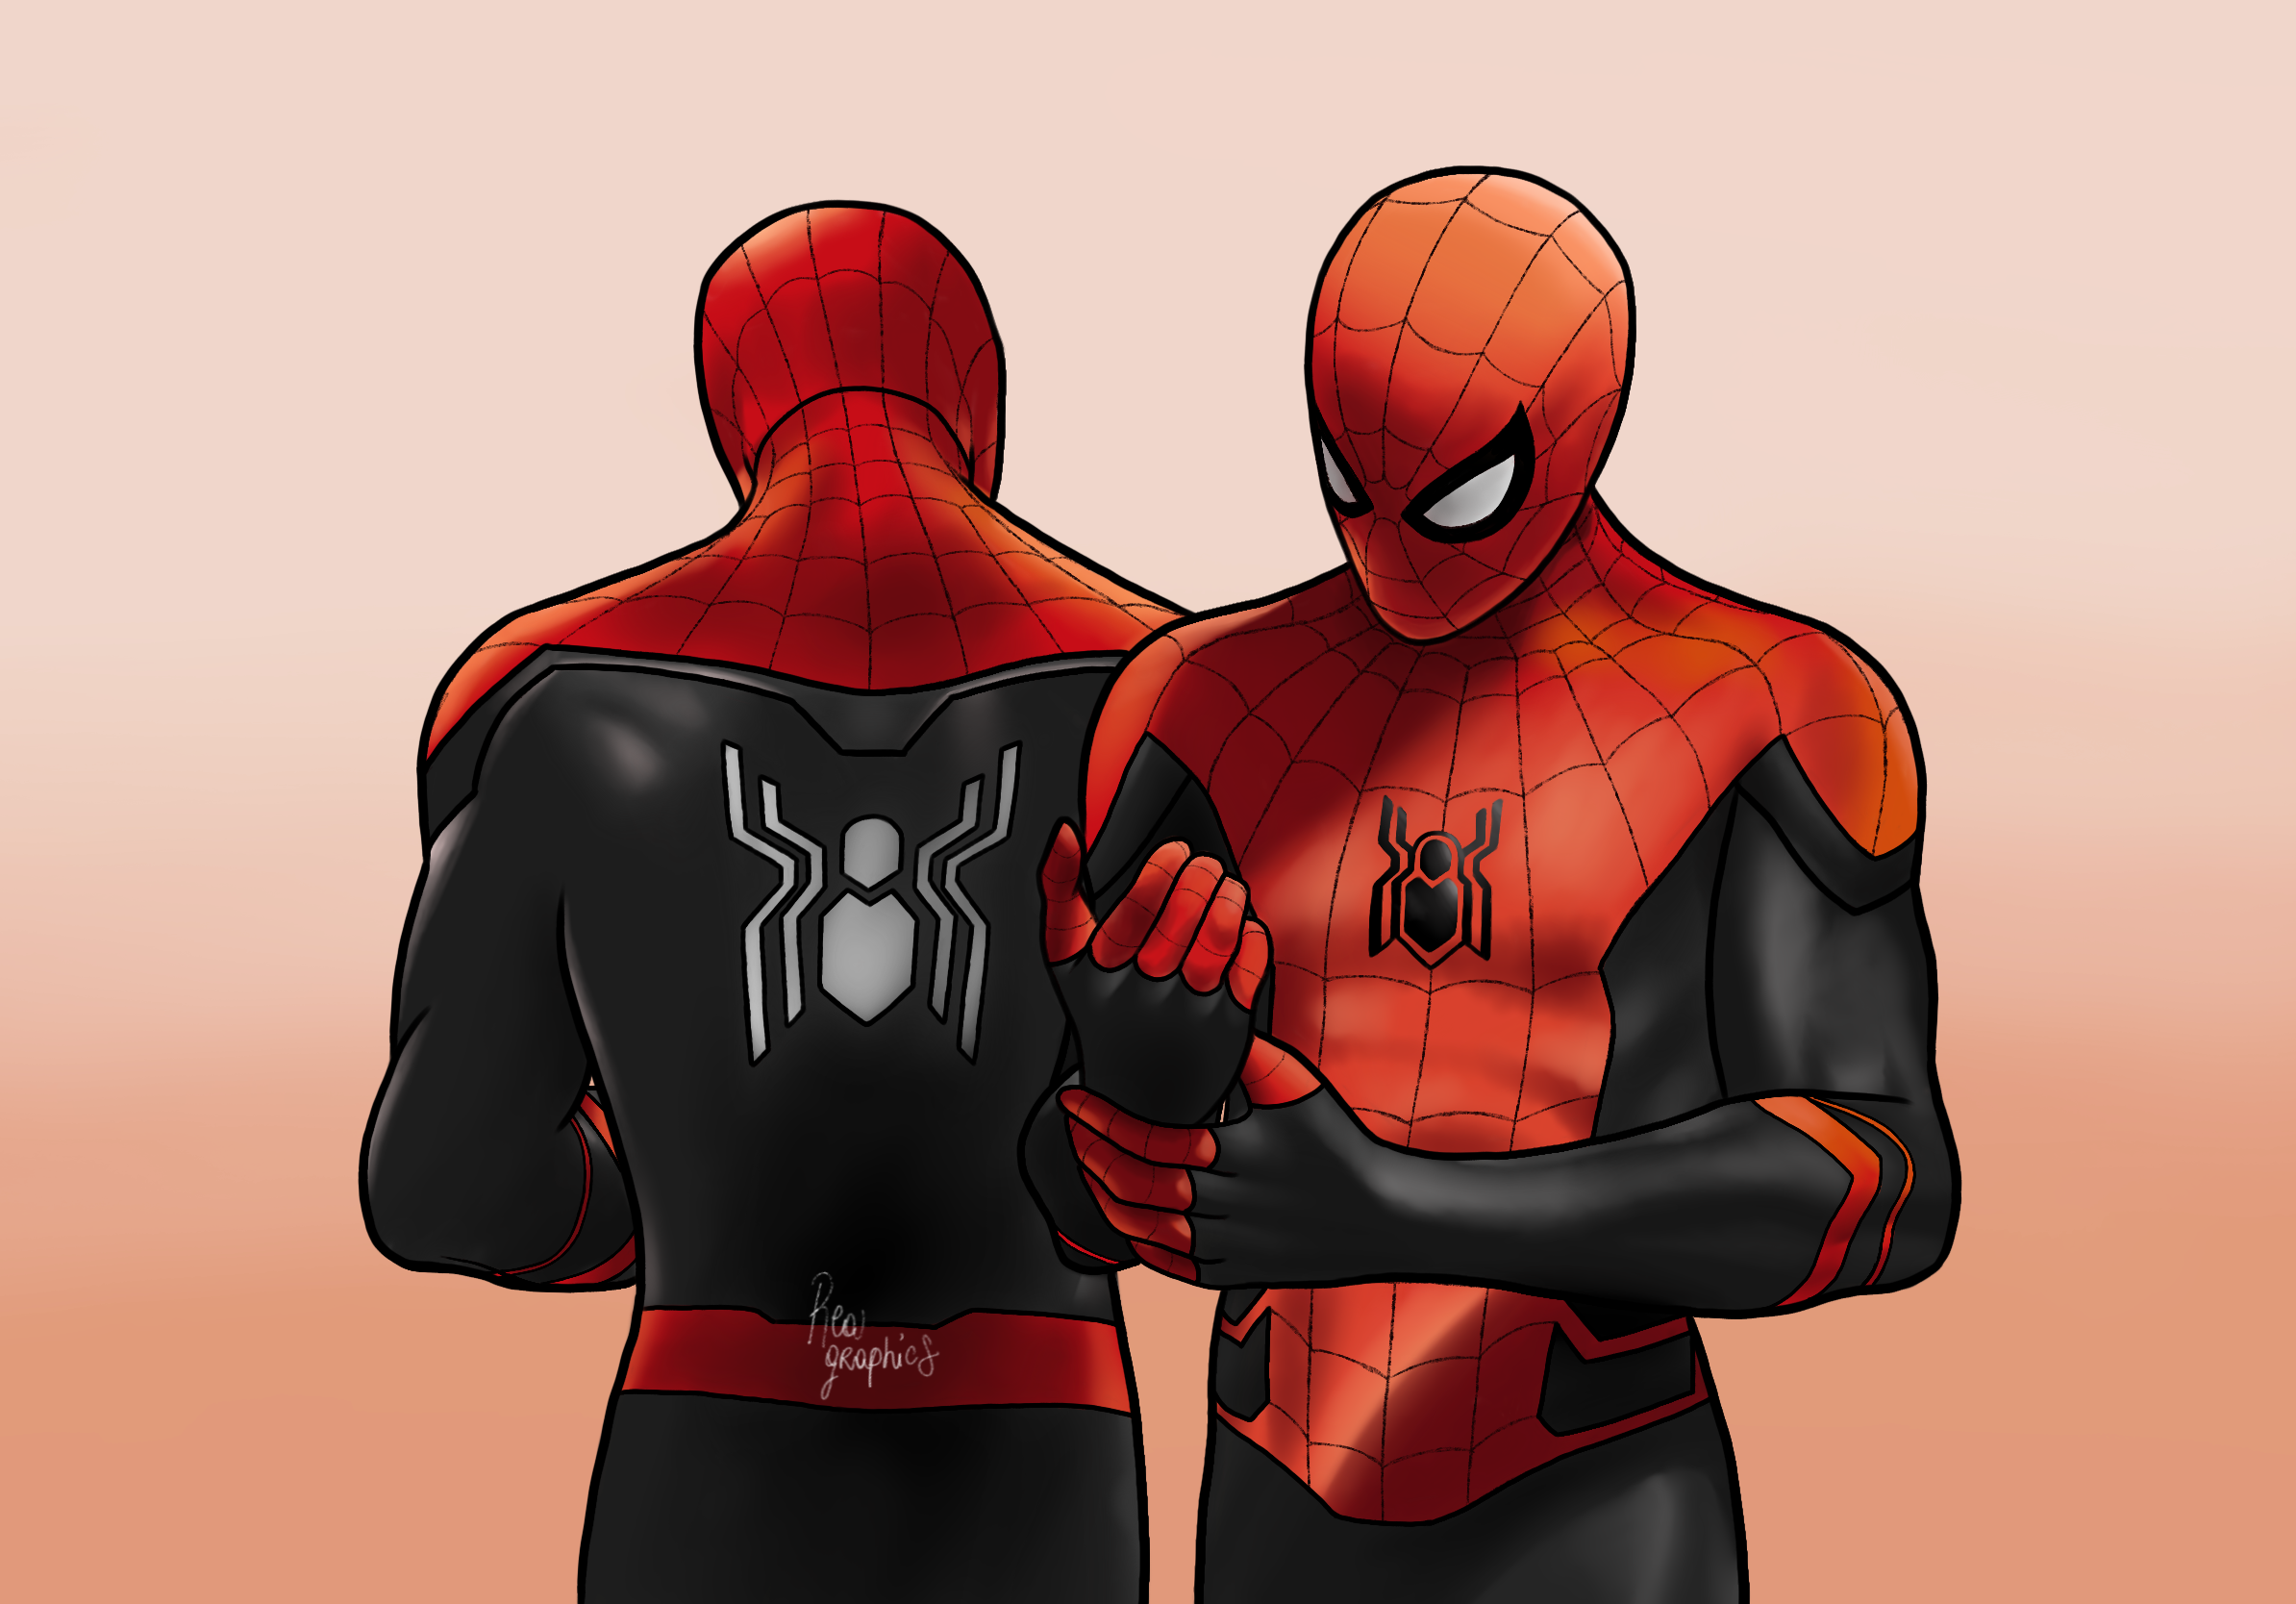 Spider-Man - Tom Holland by goldbiebs on DeviantArt